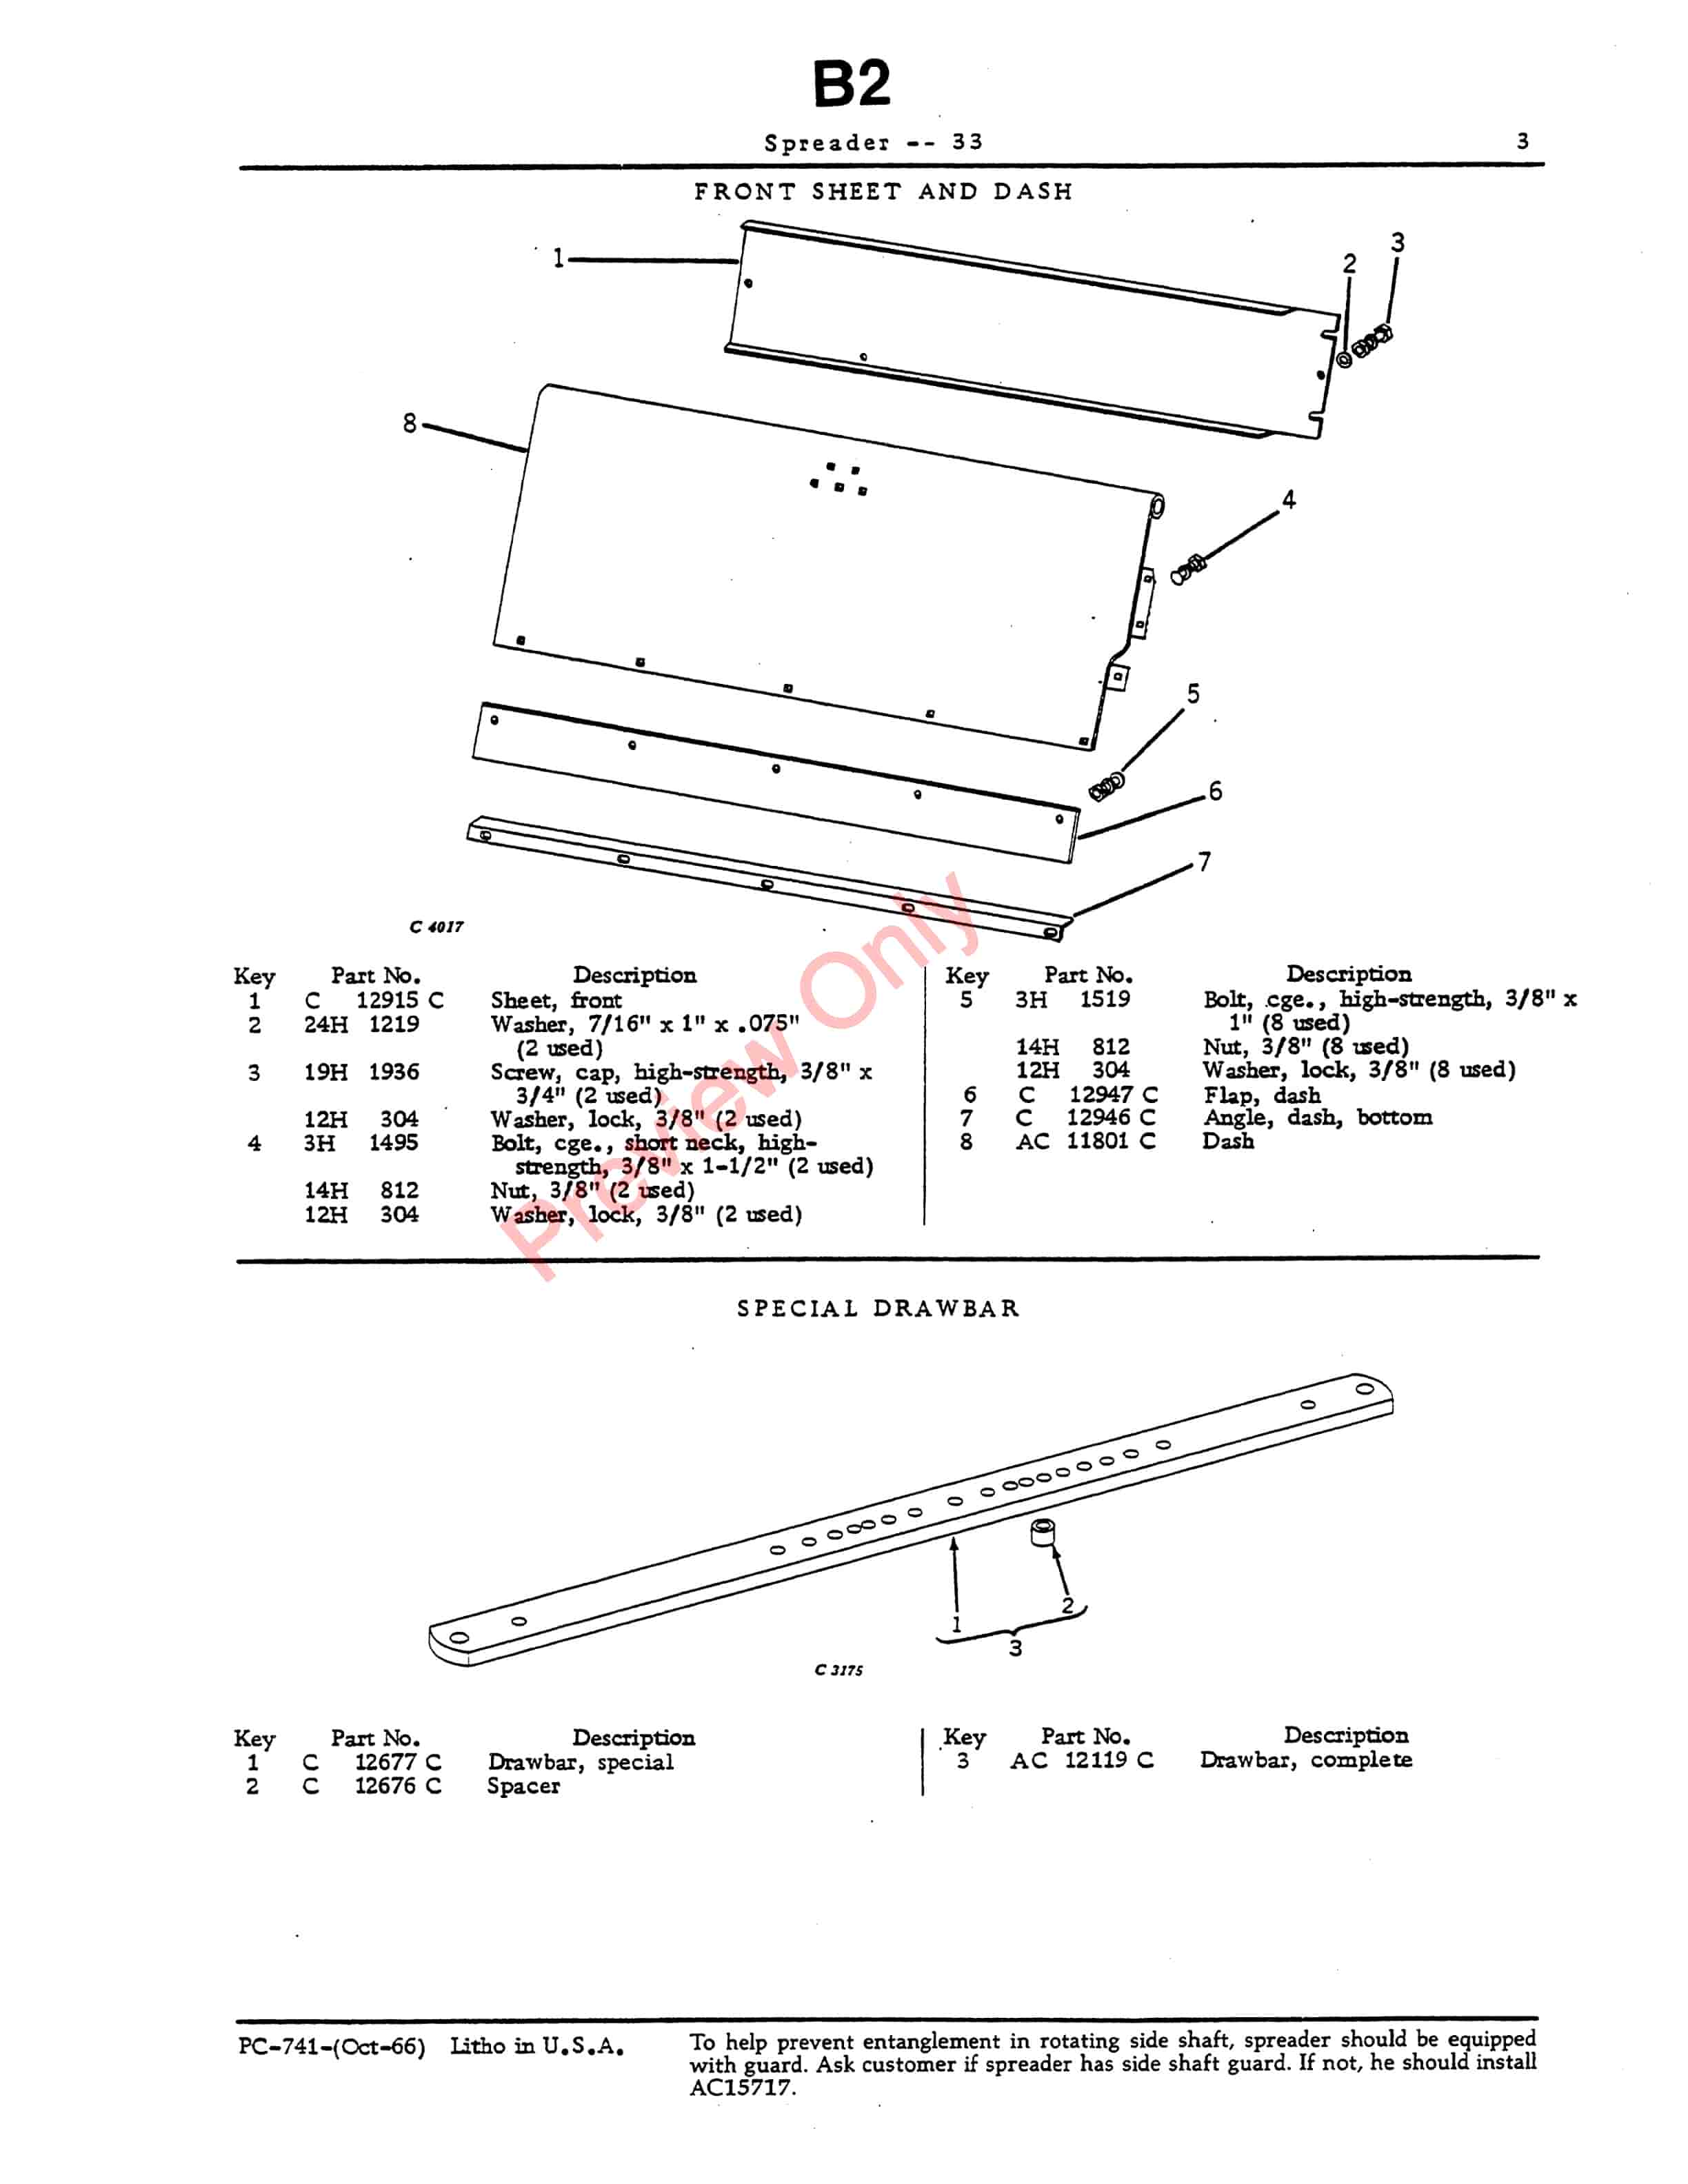 John Deere 33 Spreader Parts Catalog PC741 01OCT66-5